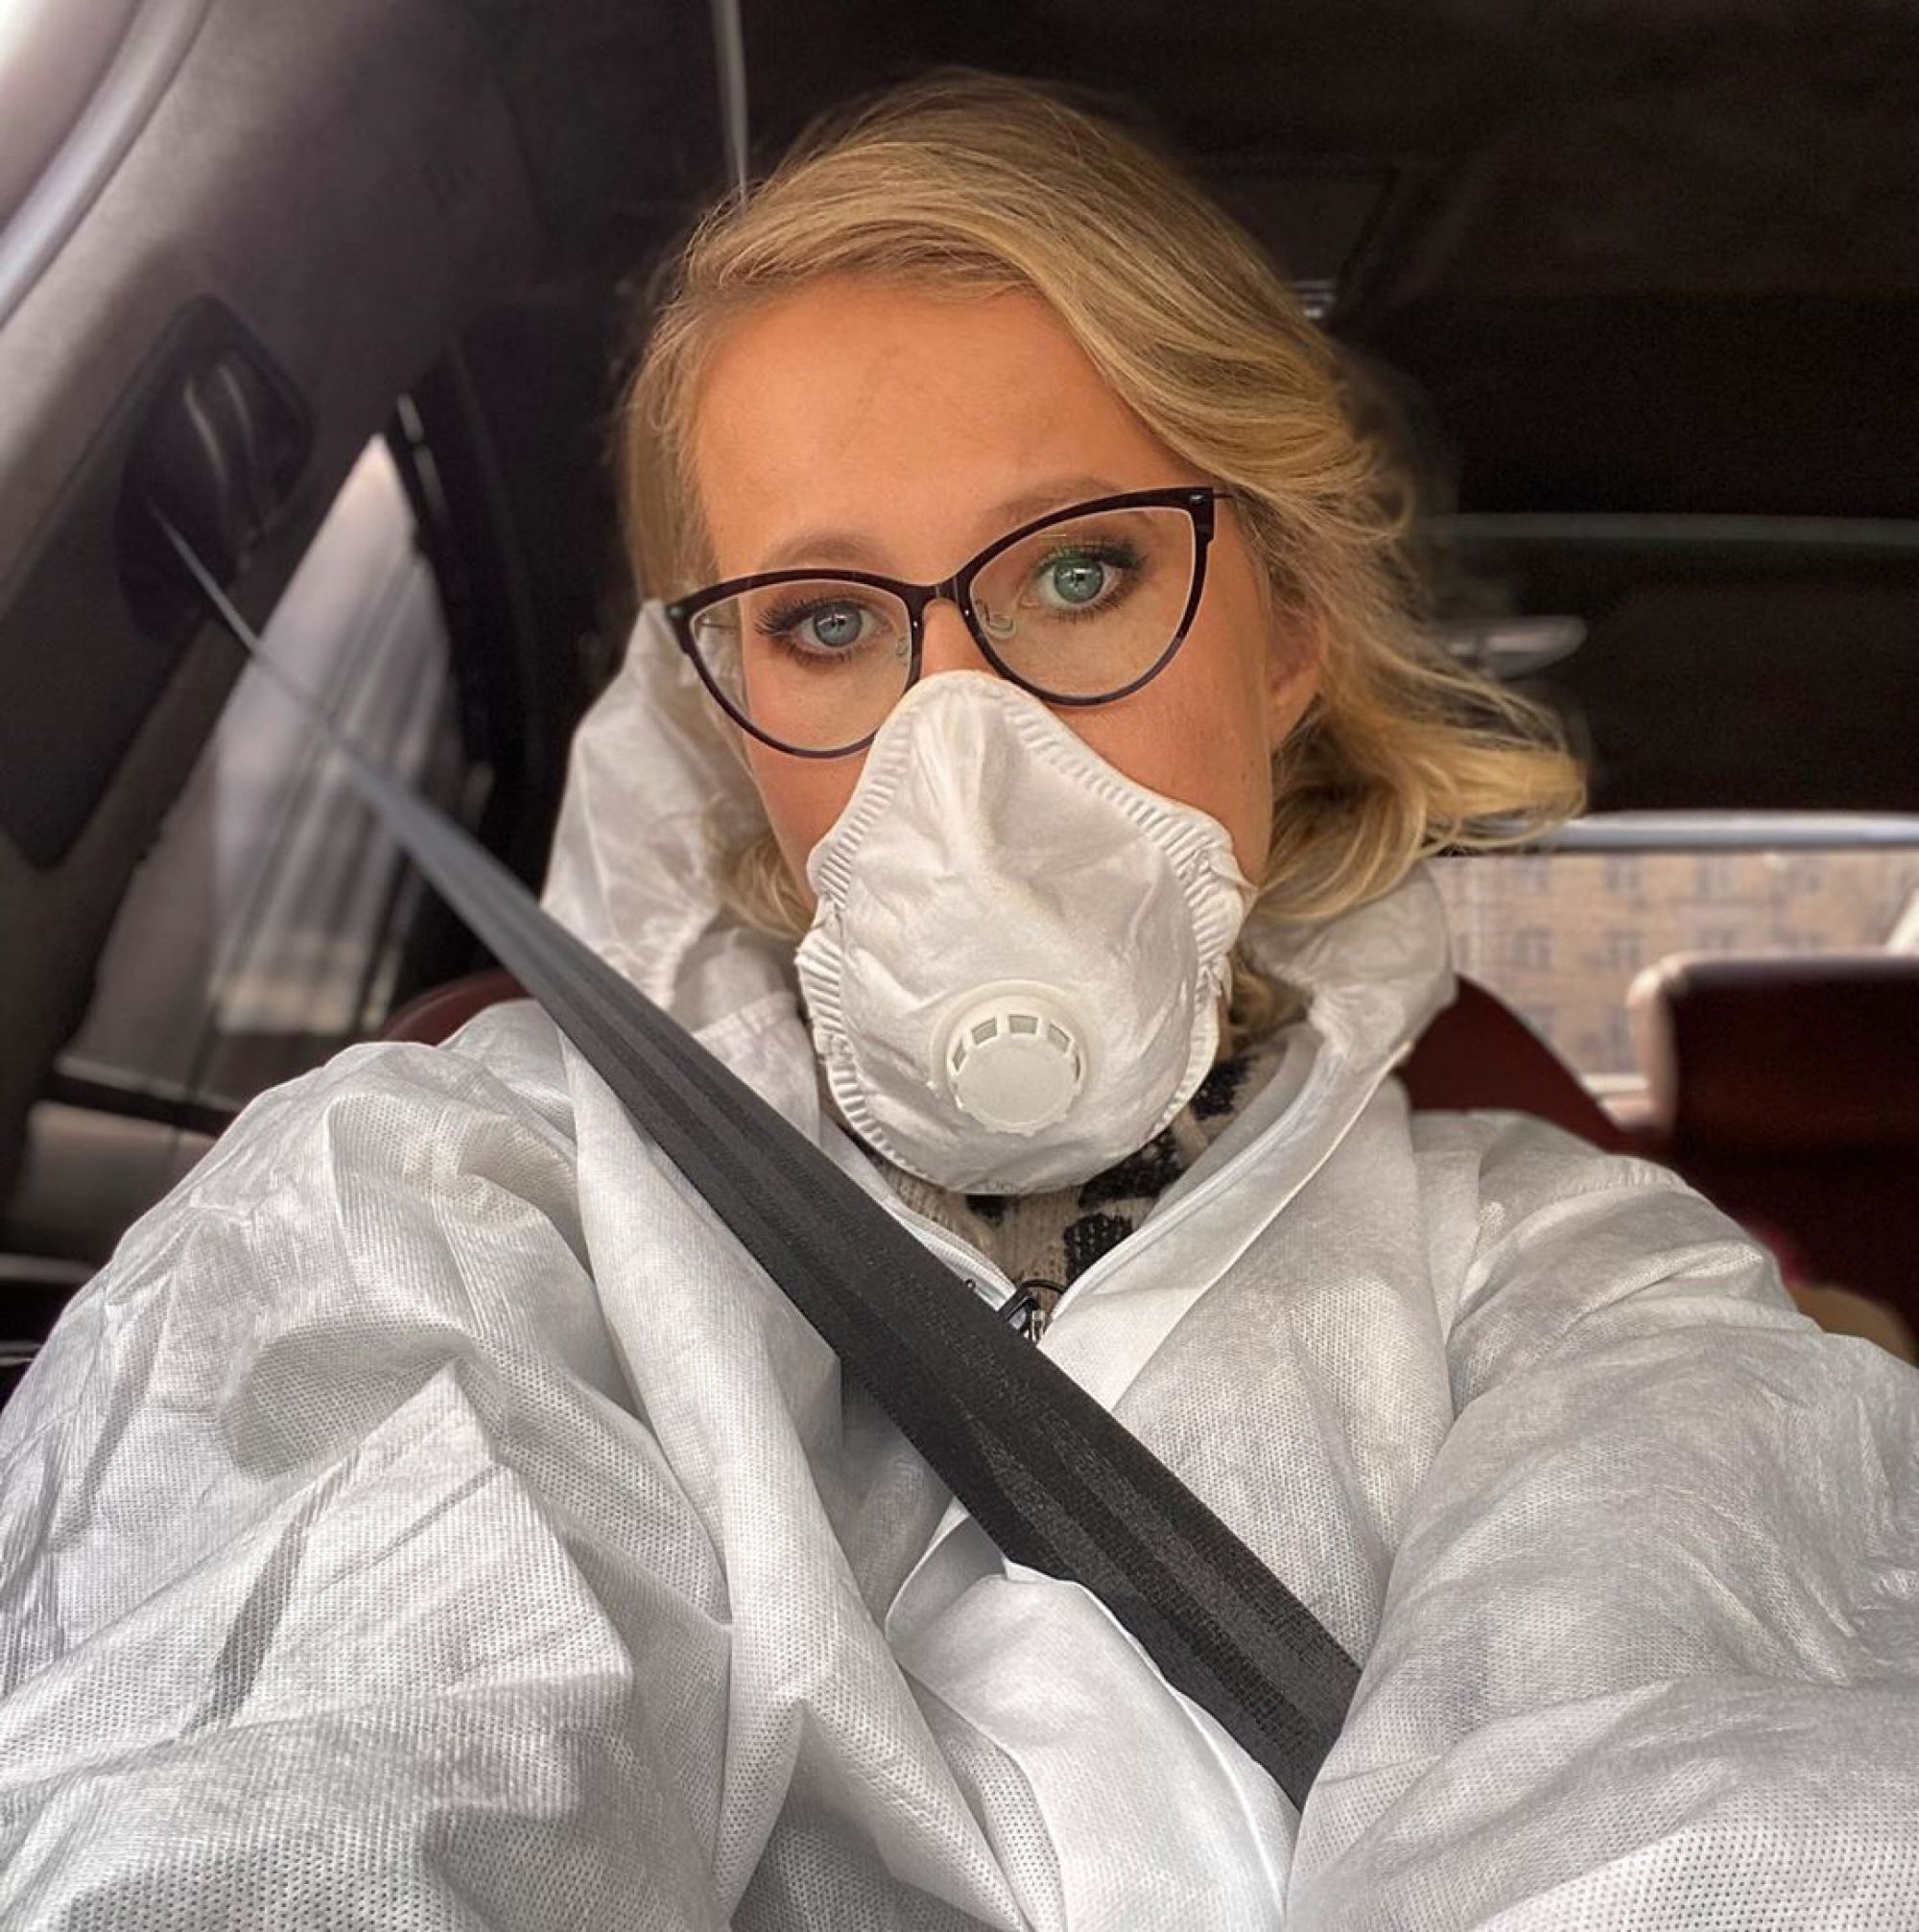 "Берегите своих родителей!": Ксения Собчак раскрыла результат теста матери на коронавирус